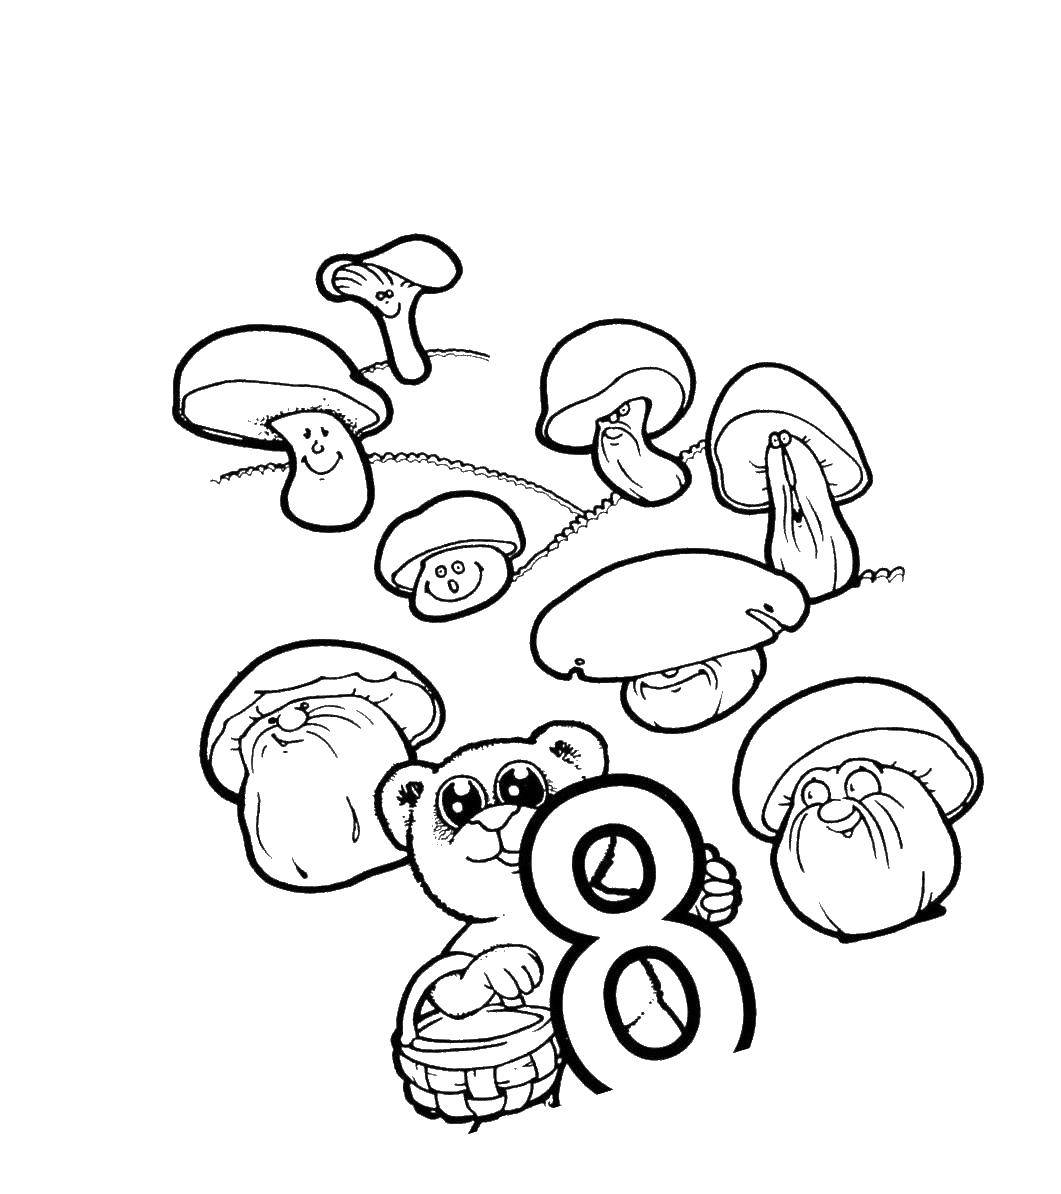 Coloring Bear mushrooms. Category autumn. Tags:  mushroom, bear.